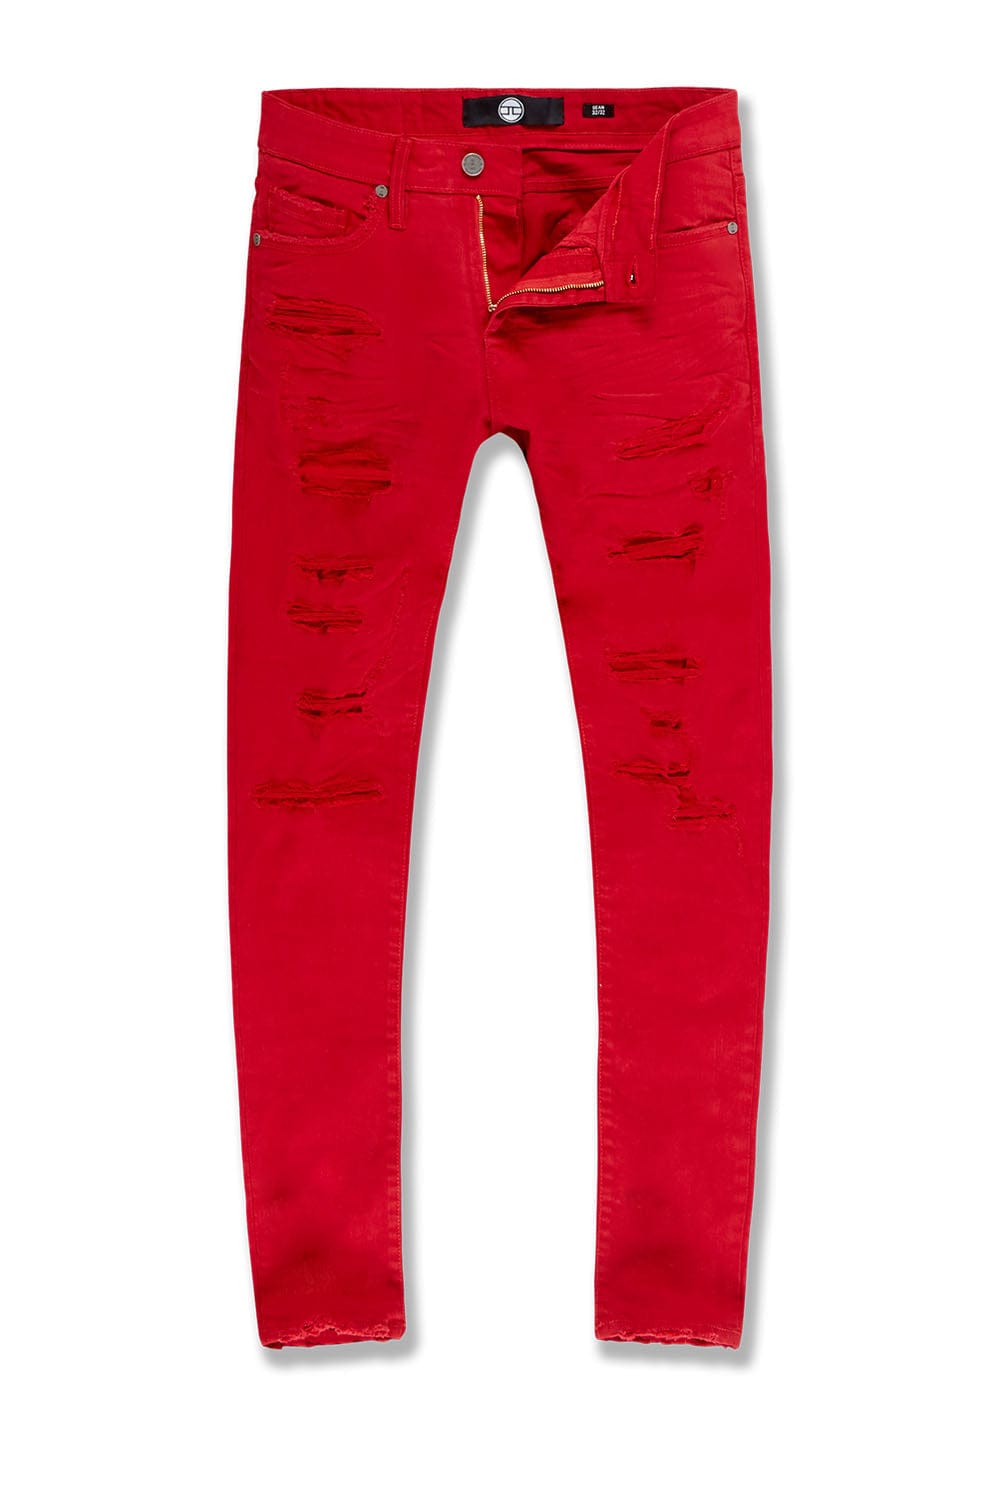 Jordan Craig Sean - Tribeca Twill Pants (Core Colors) Red / 30/32